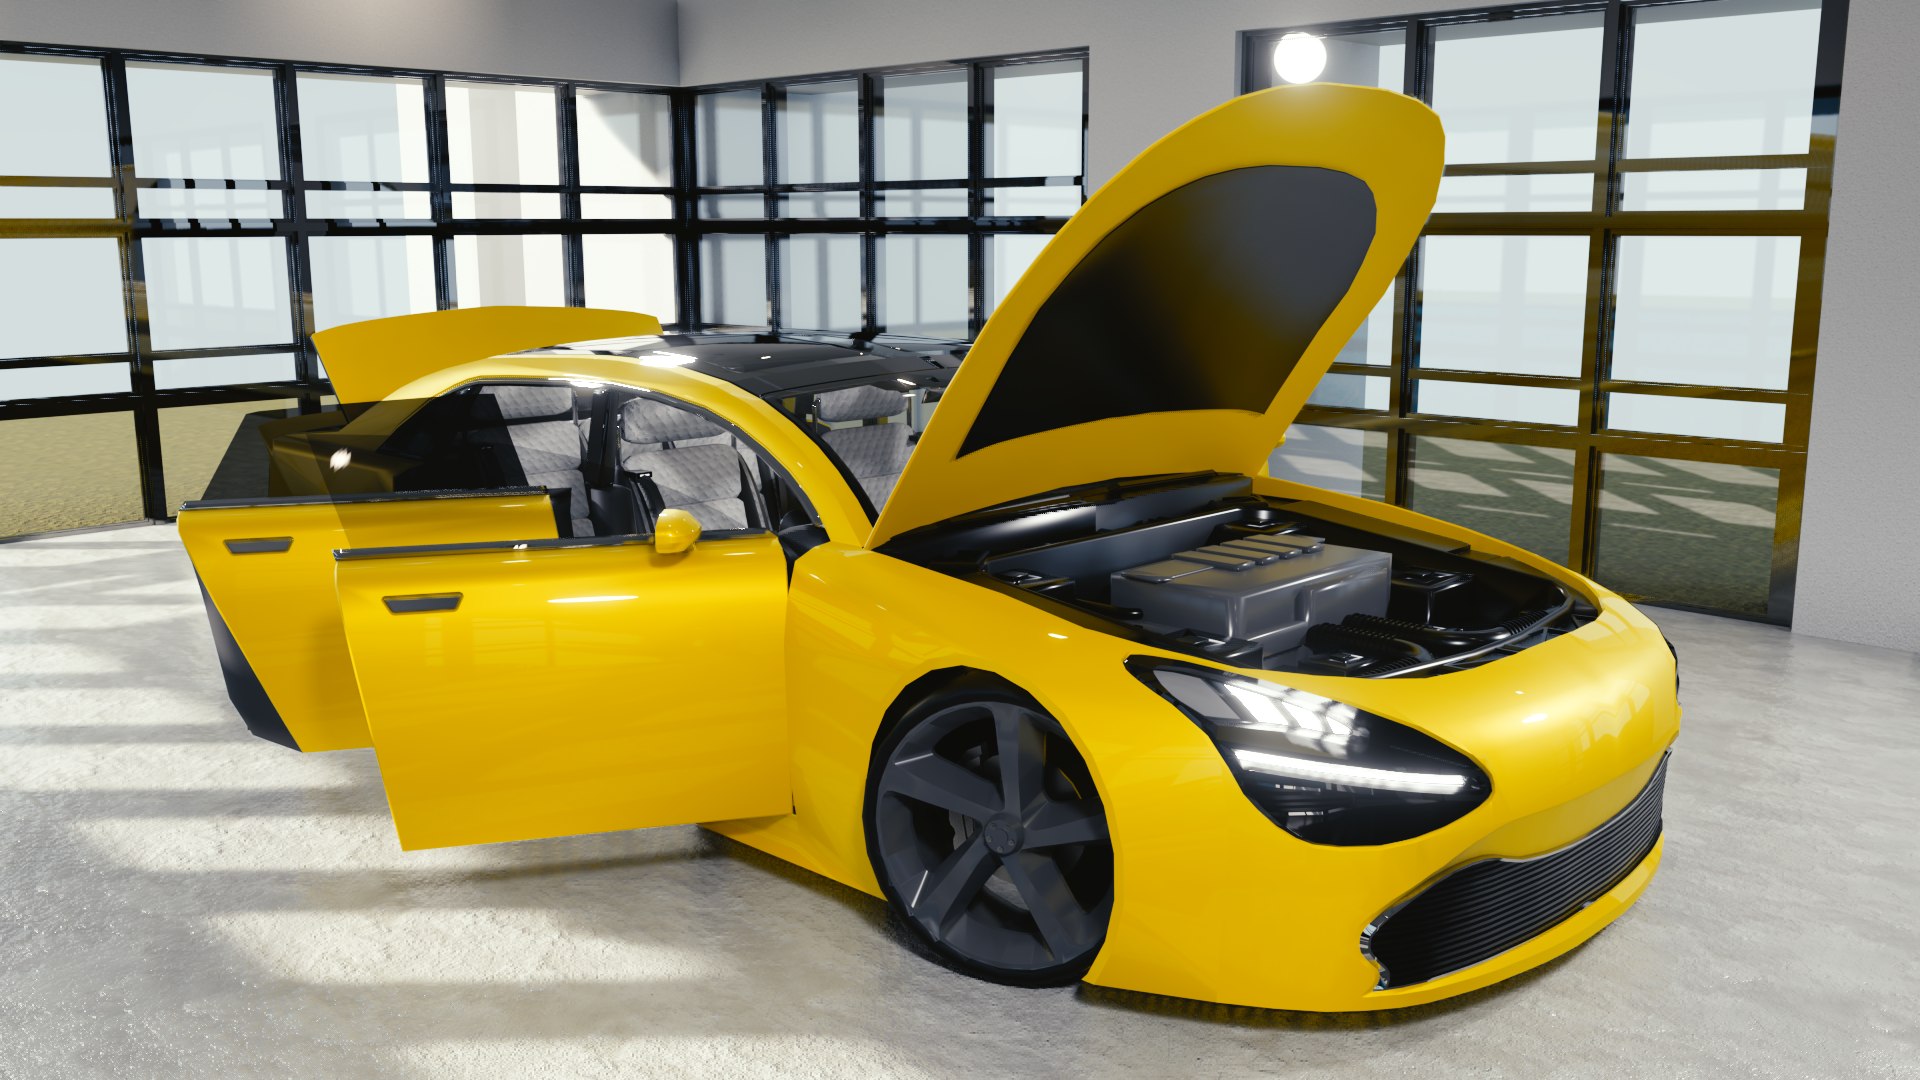 Free 3D car blender eevee brandless model - TurboSquid 1398140